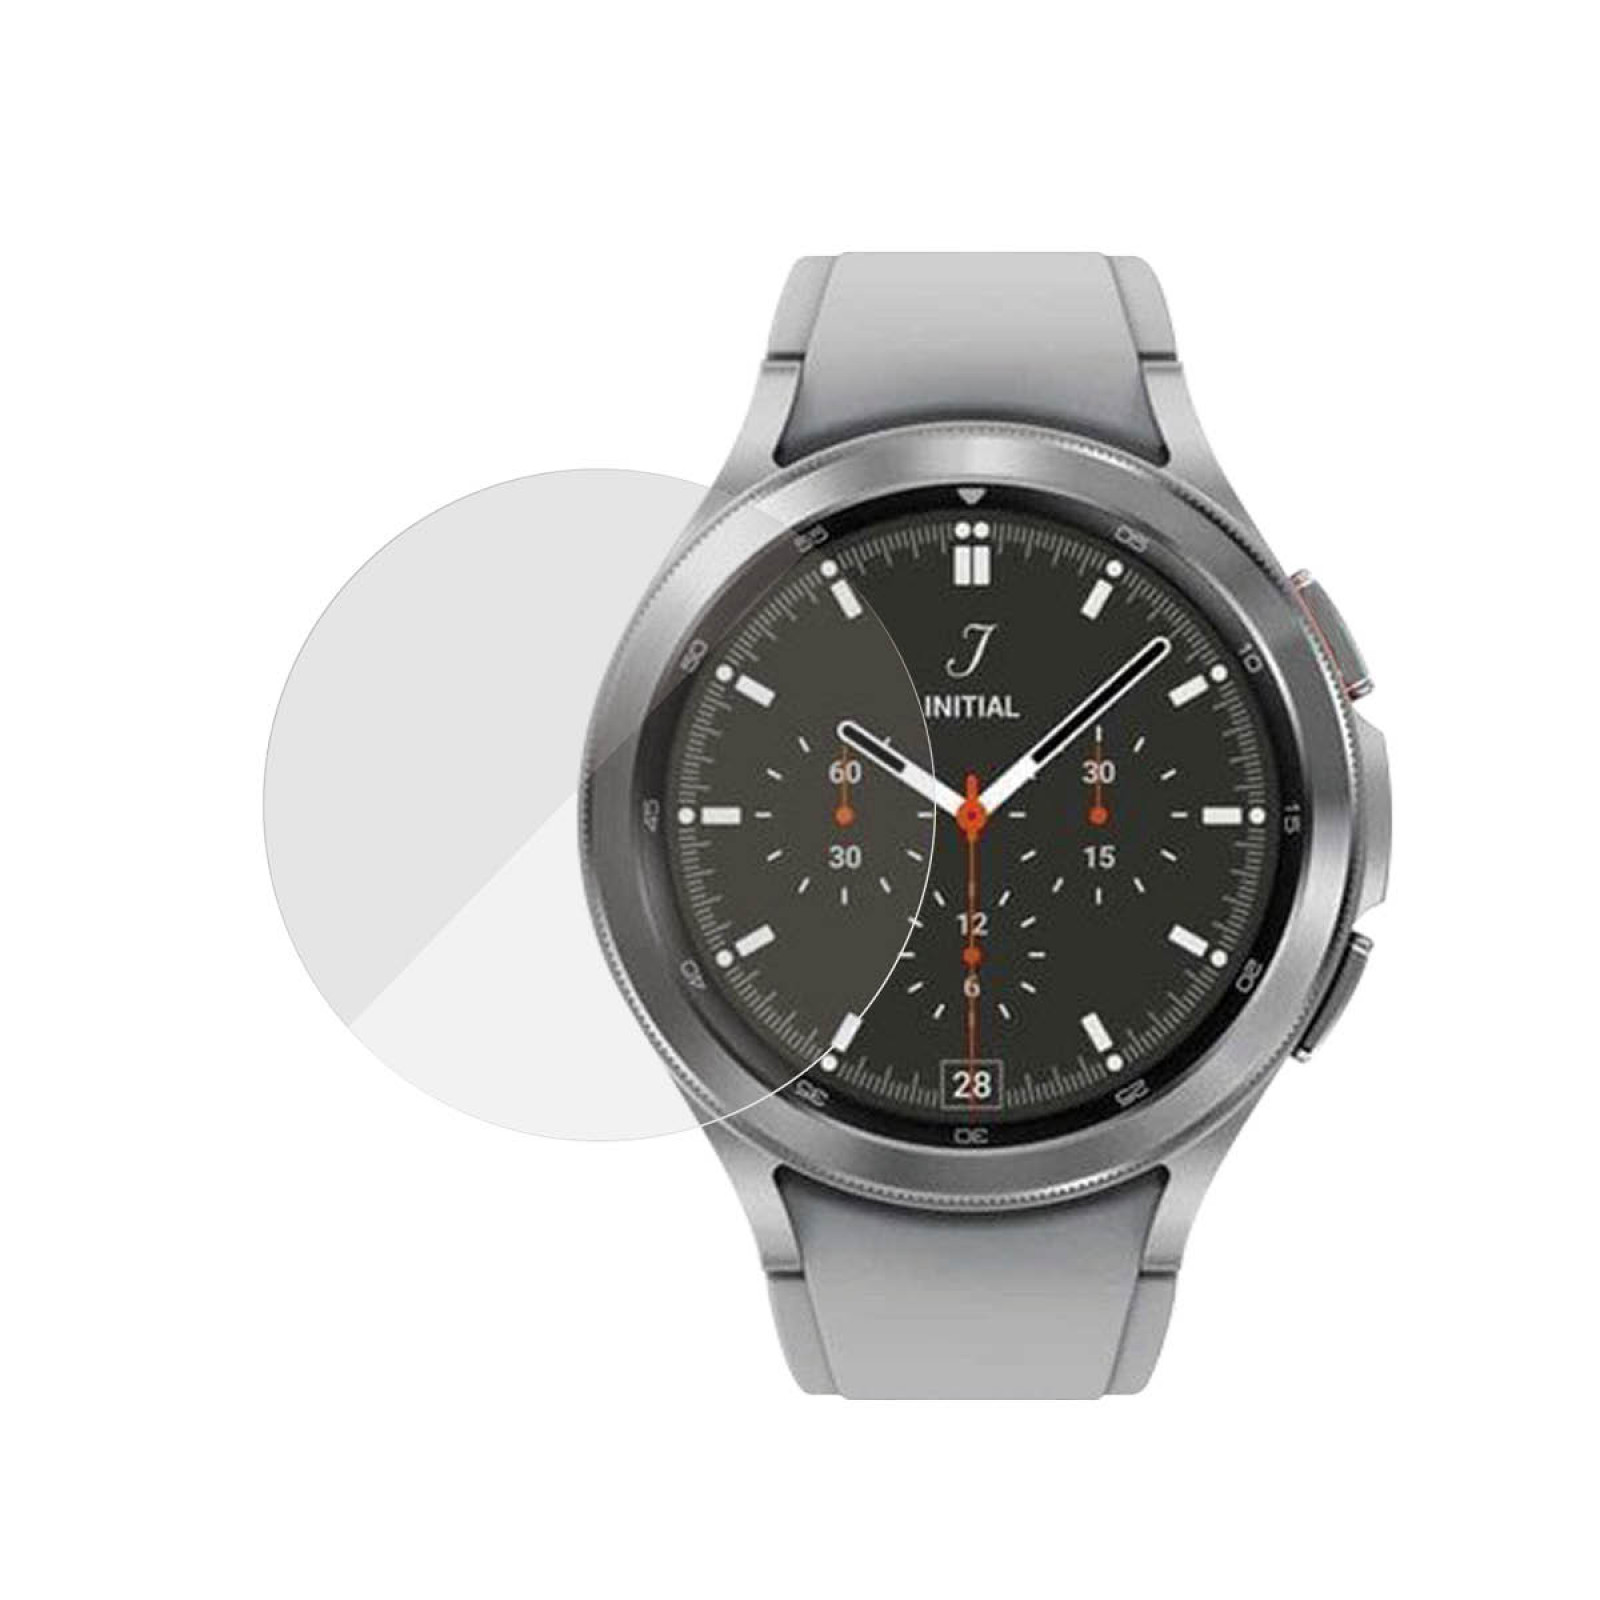 Стъклен протектор за часовник PanzerGlass за Samsung Galaxy Watch 4 Classic, 41.5mm